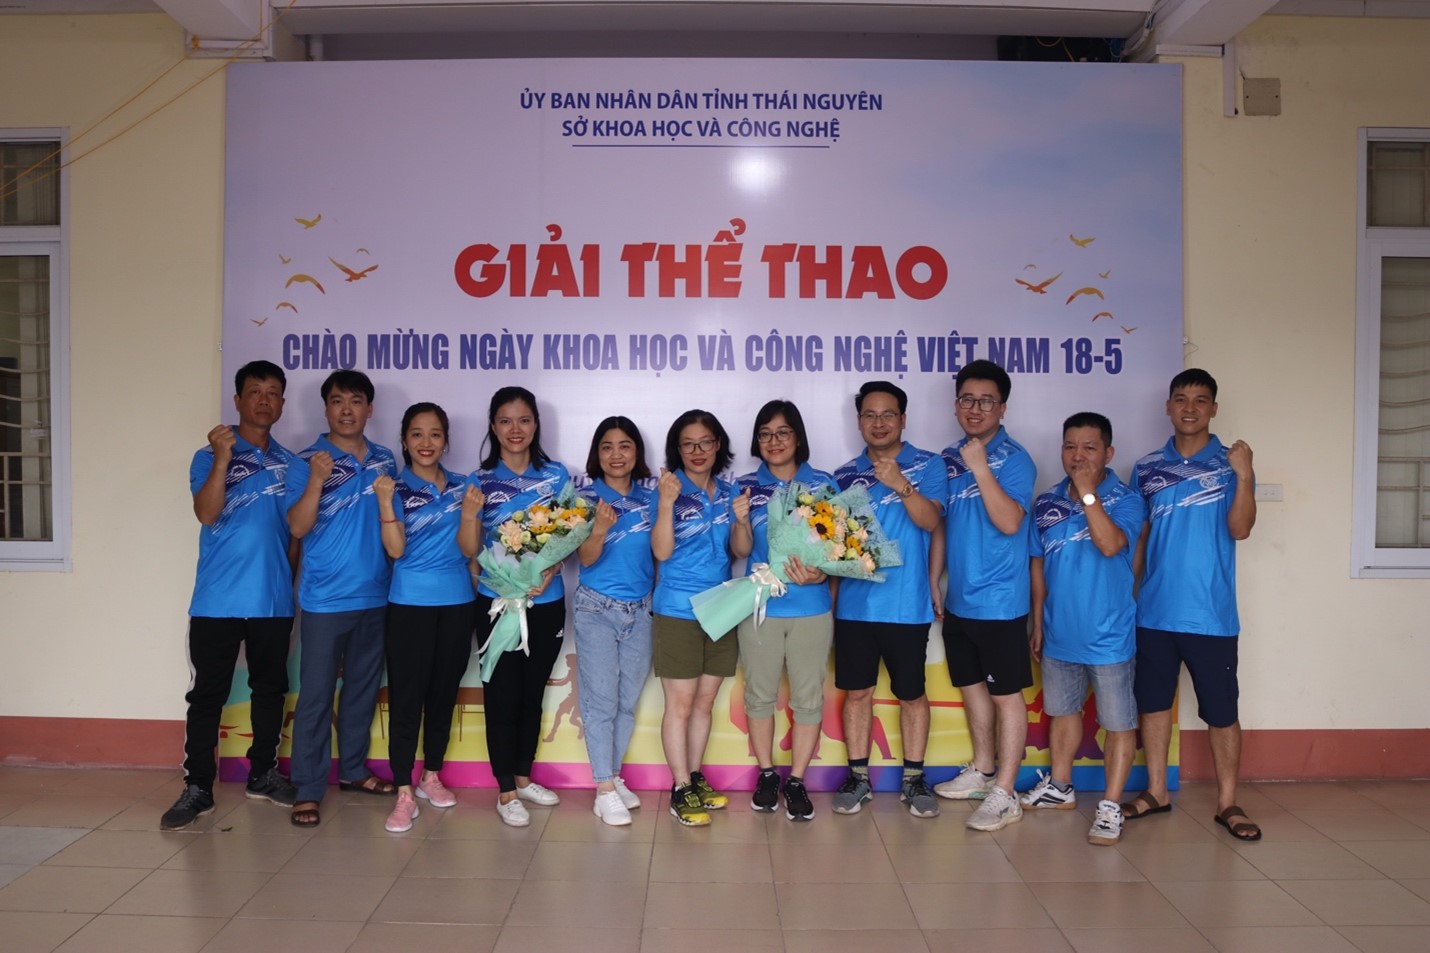 Giải thể thao chào mừng Ngày Khoa học và Công nghệ Việt Nam 18-5 -3